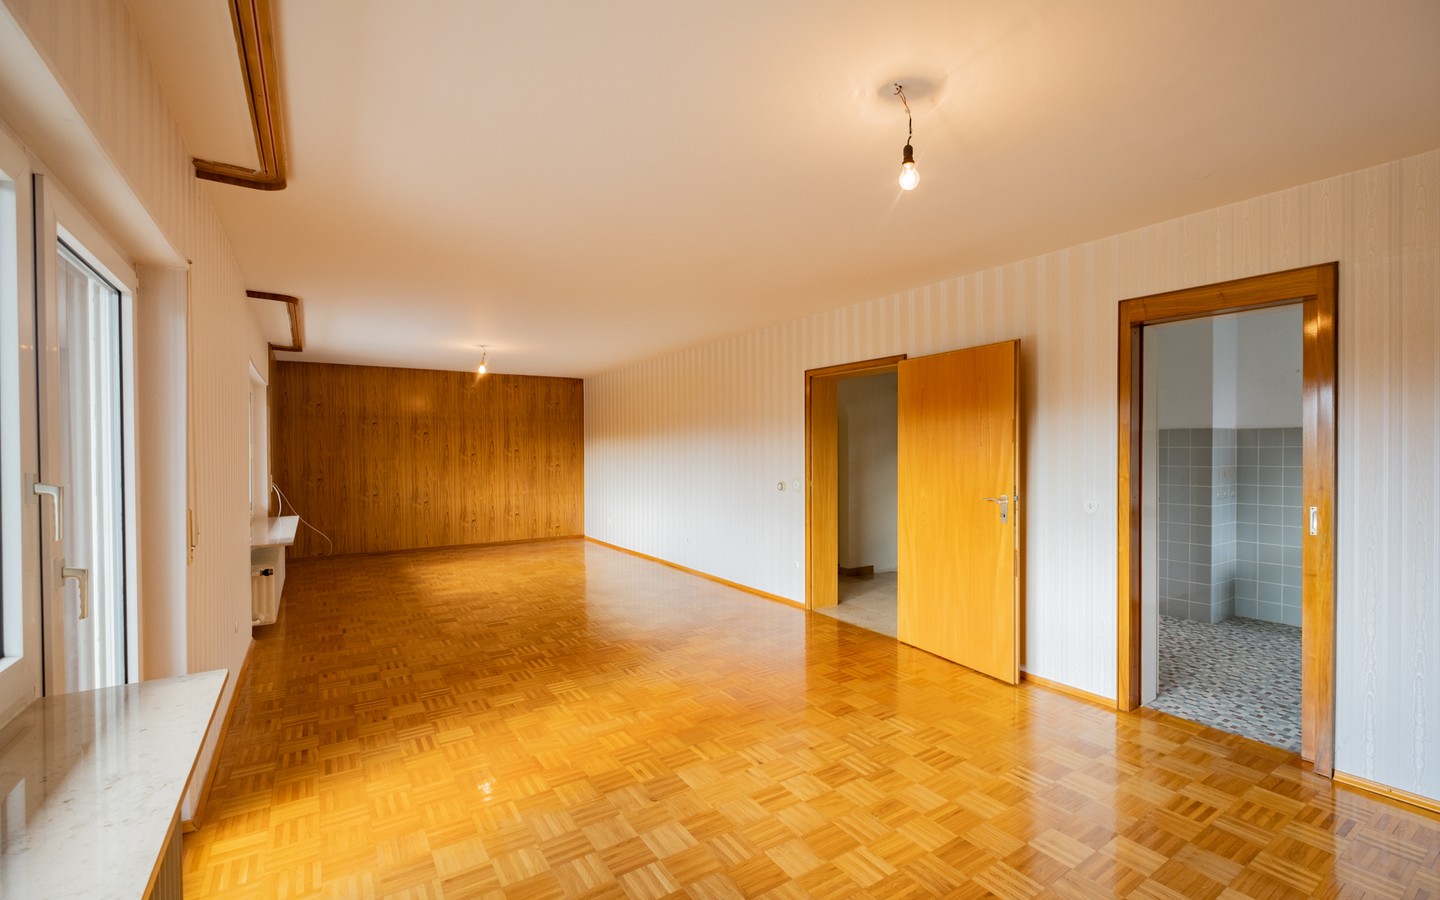 Zimmer zum Balkon - Leimen: freistehendes Haus in Splitlevelbauweise, mit 2 Garagen, 2 Stellplätzen und Garten